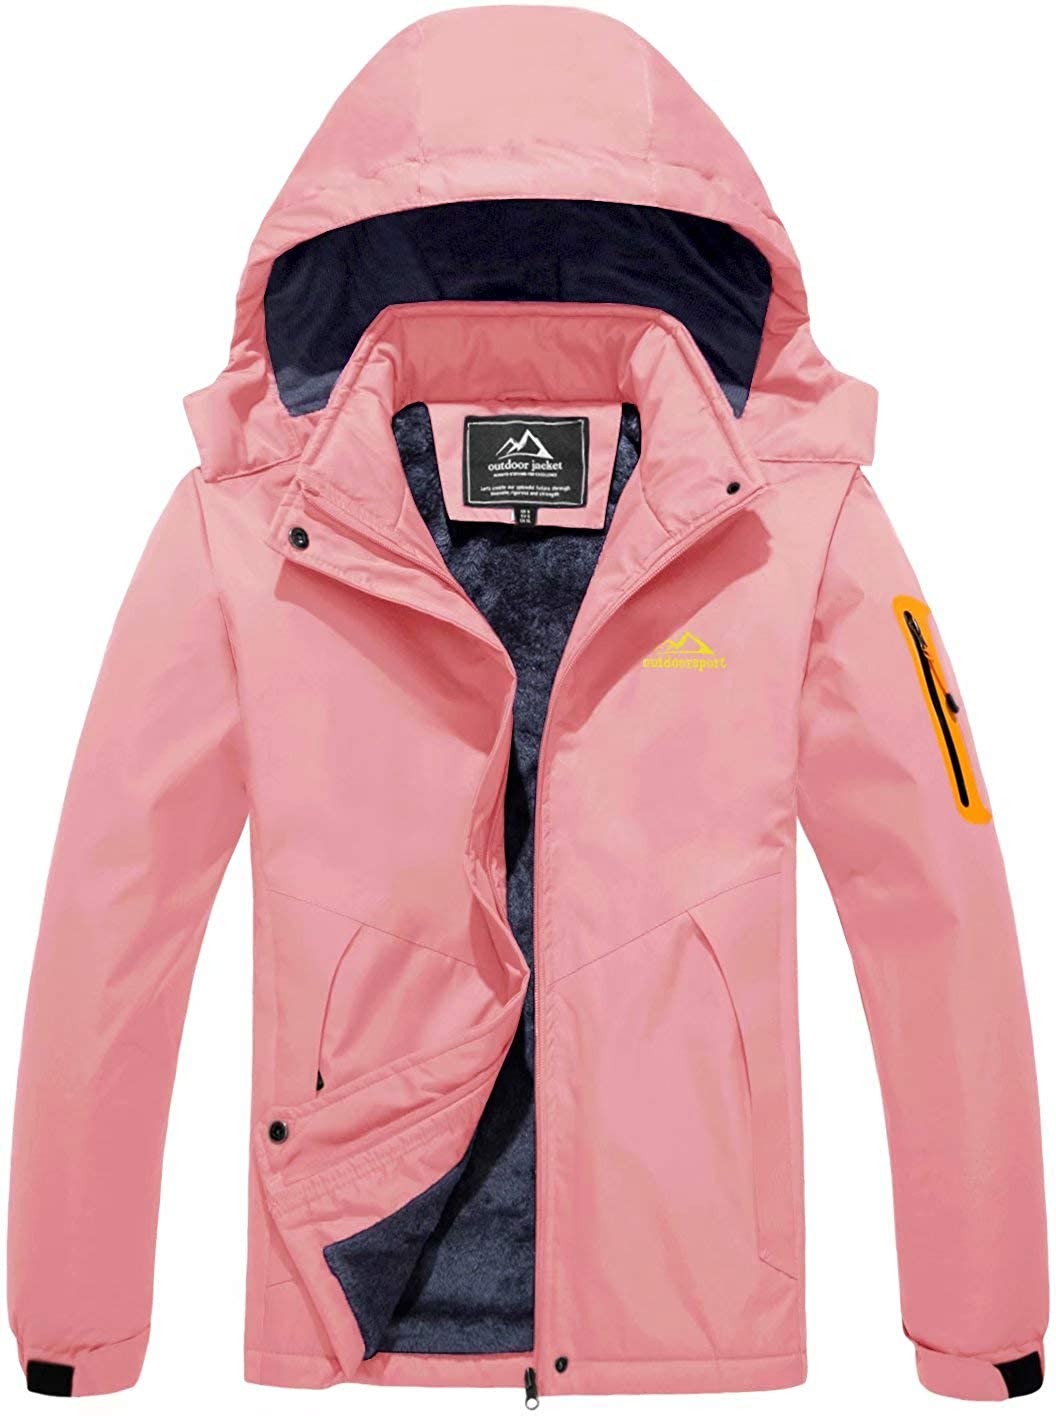 MAGCOMSEN Women's Winter Coats Water Resistant Snow Ski Jacket Fleece Lined with Hood Windproof Rain Jackets Parka 